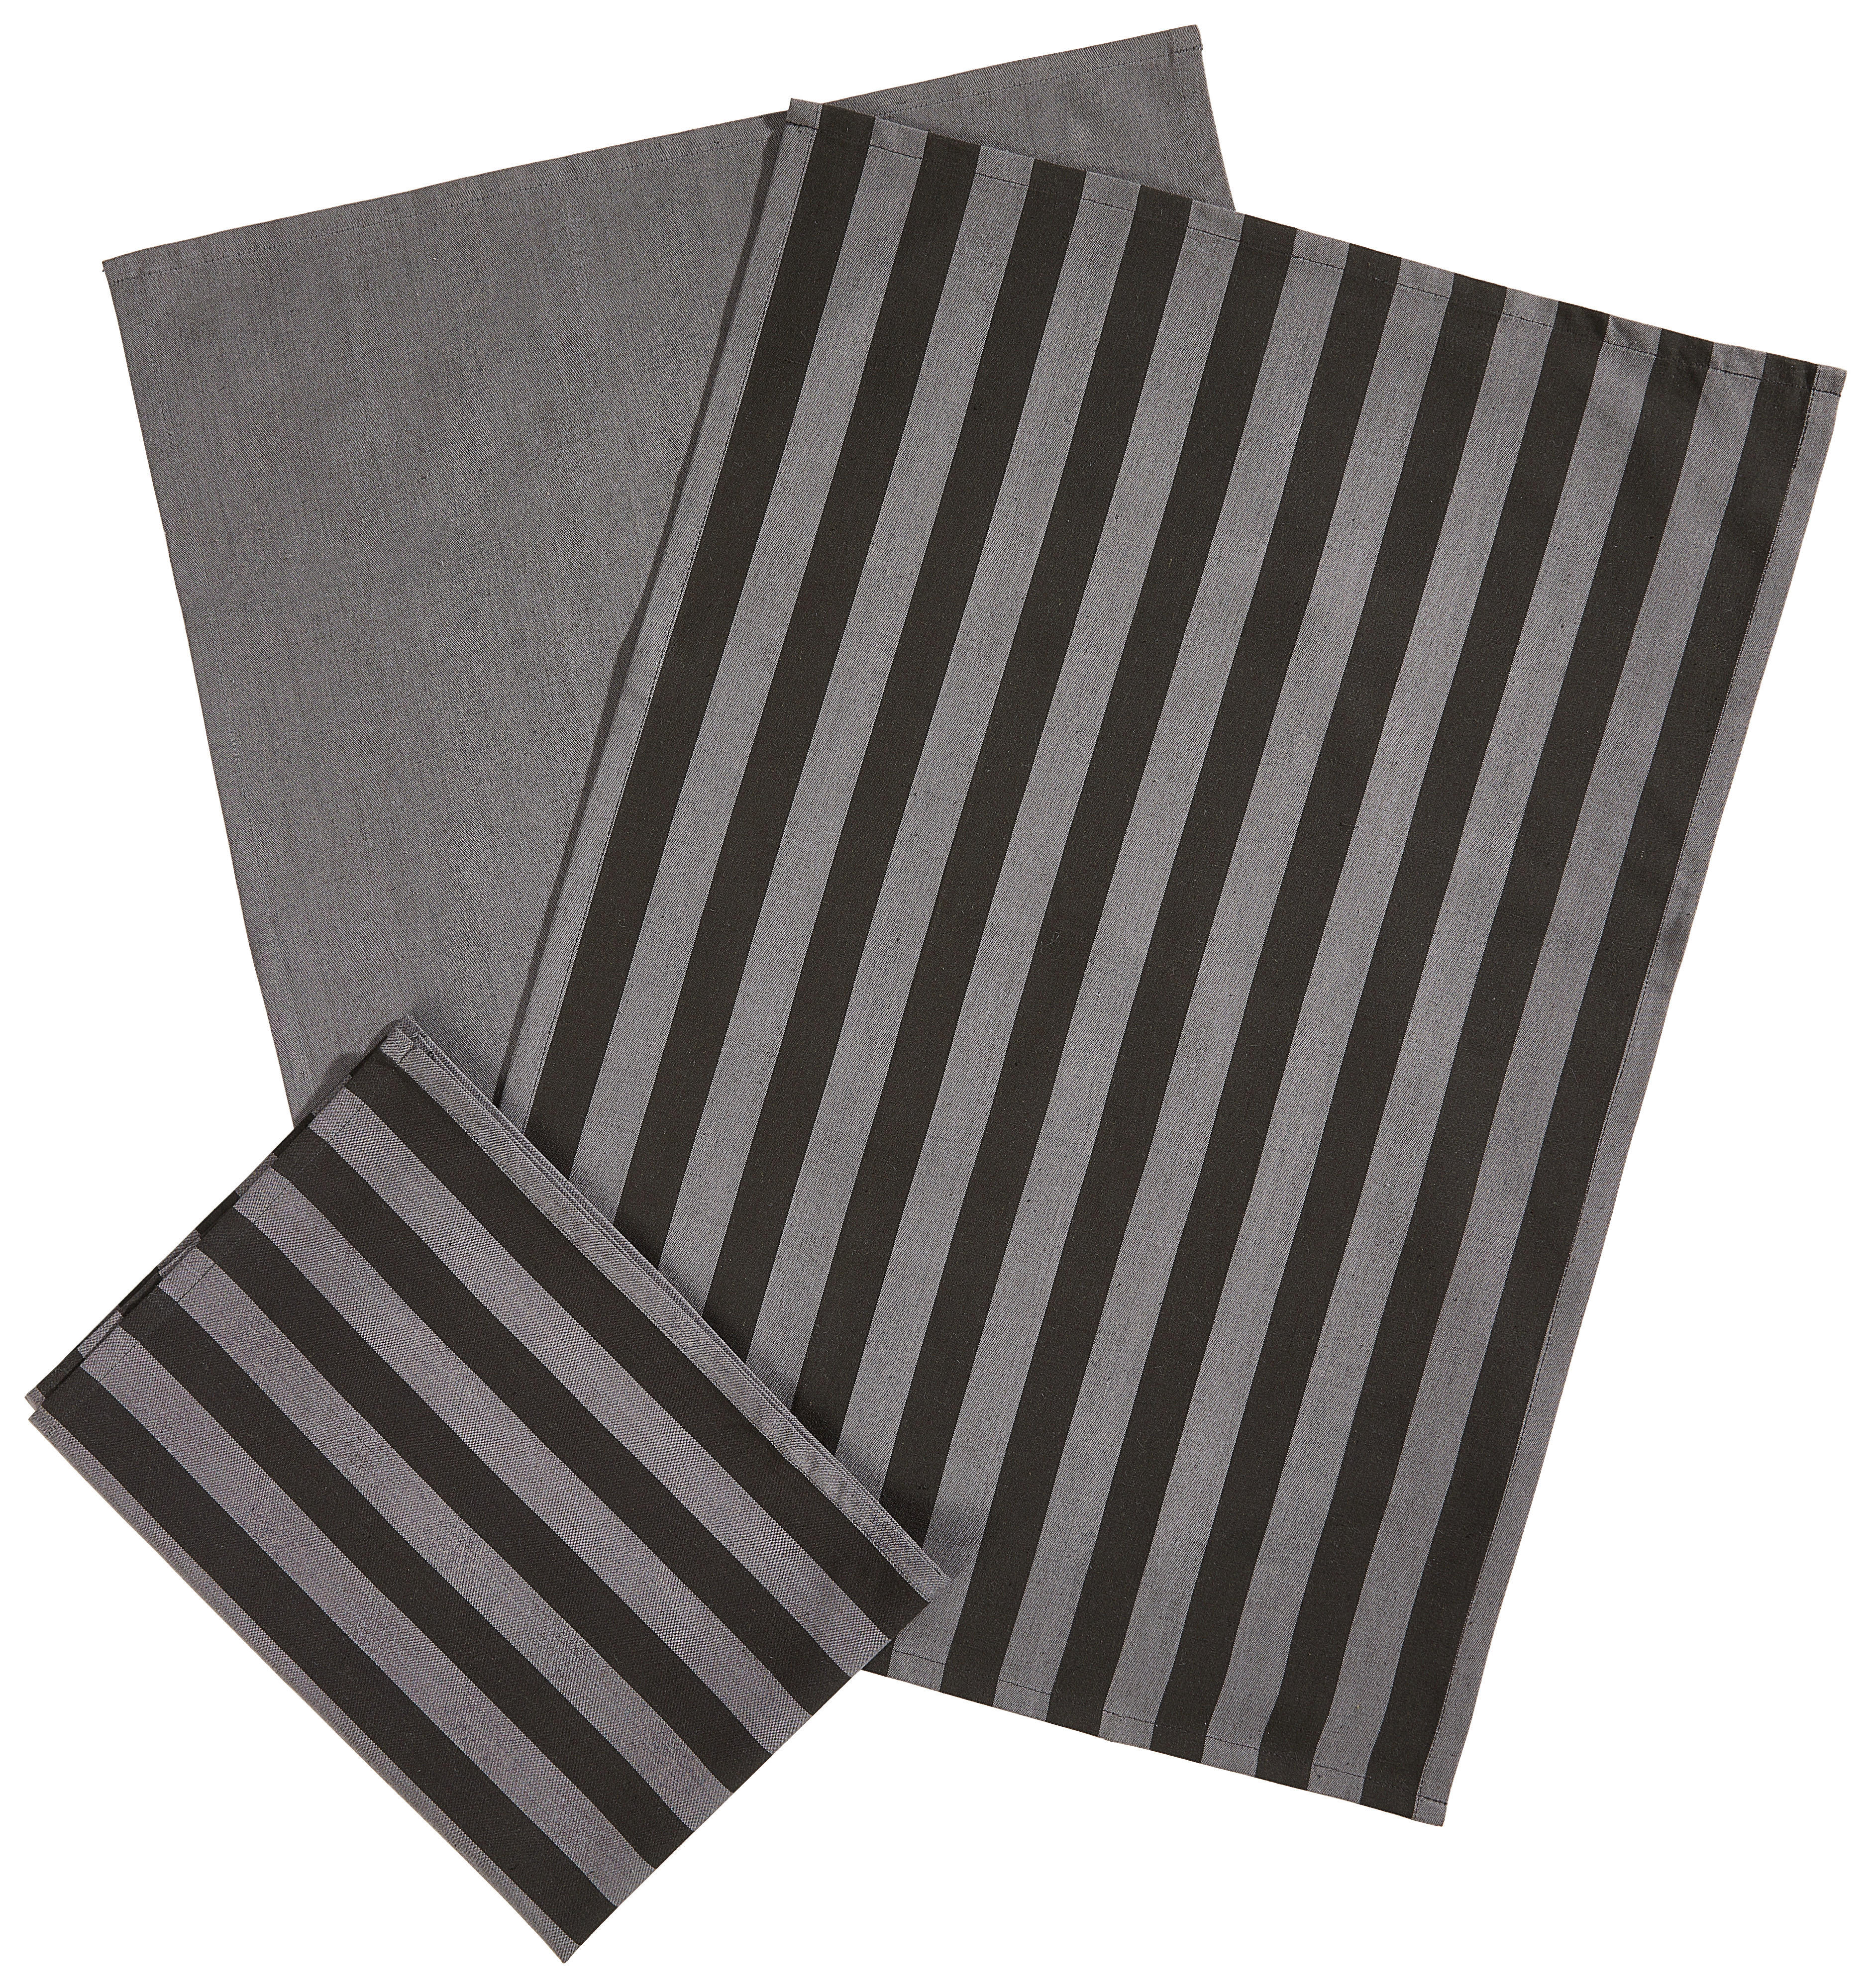 GESCHIRRTUCH-SET 3-teilig Grau, Schwarz  - Schwarz/Grau, KONVENTIONELL, Textil (50/70cm) - Esposa